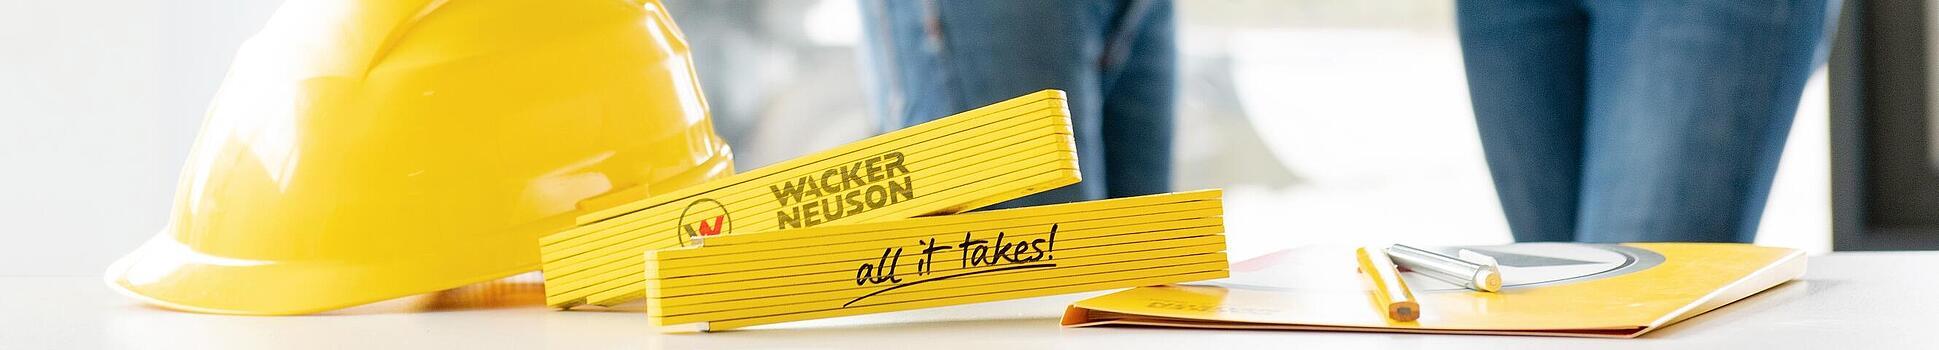 Artigo de merchandising da Wacker Neuson está em uma mesa em primeiro plano, com os funcionários da Wacker Neuson em segundo plano.